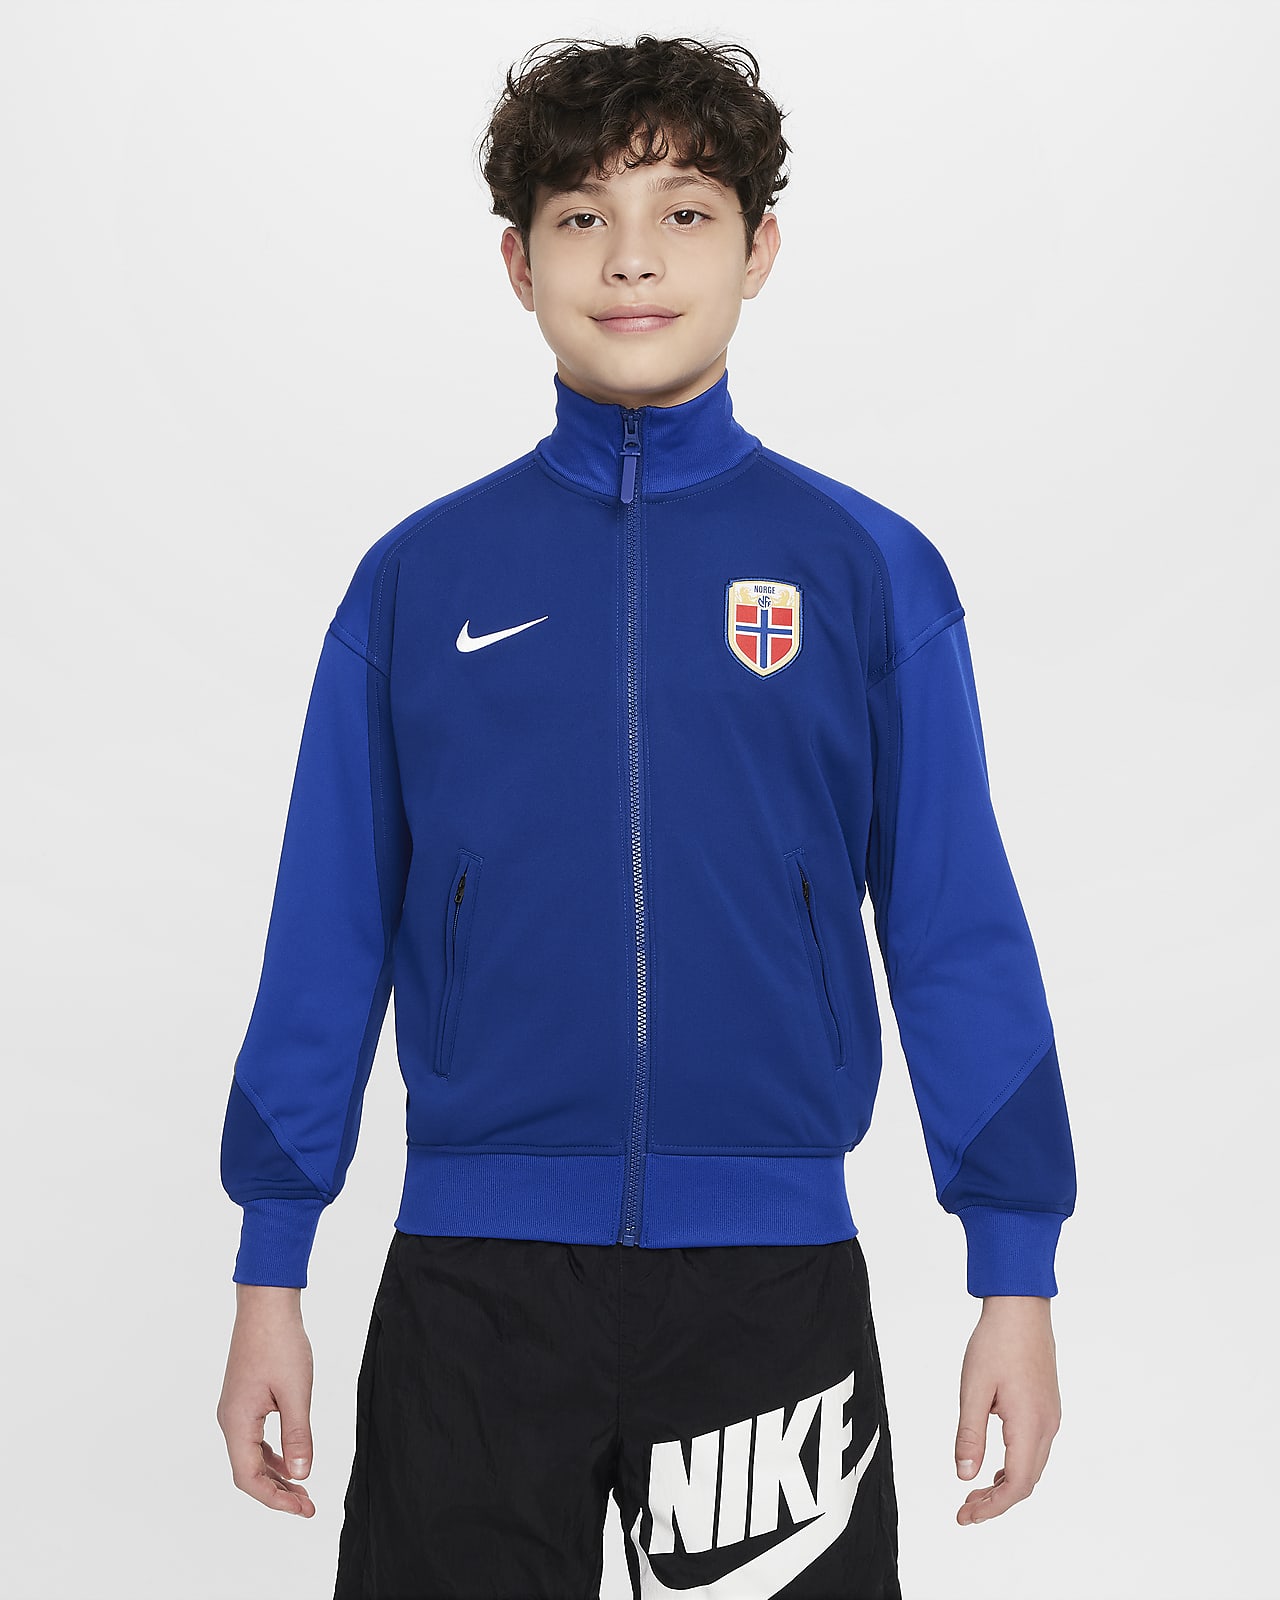 Norvégia Academy Pro Nike Dri-FIT futballkabát nagyobb gyerekeknek